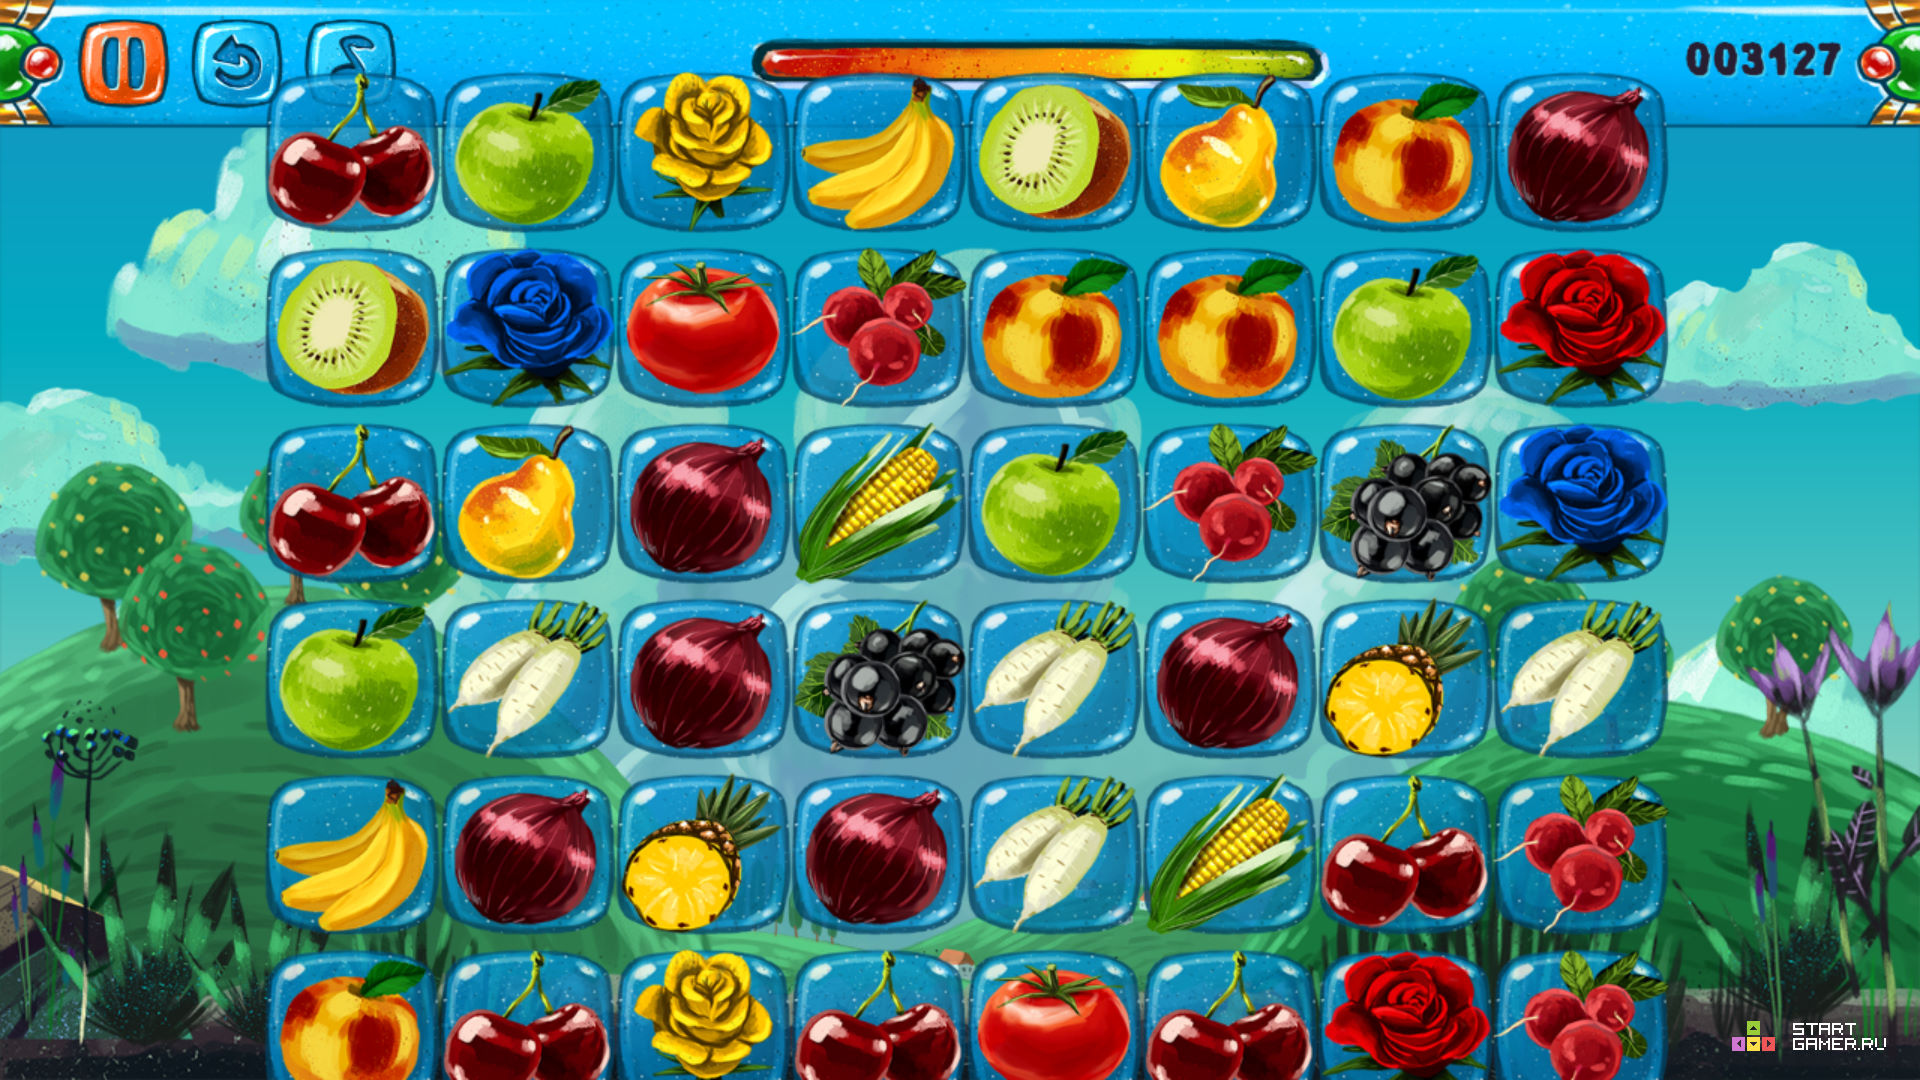 Игра собирать фрукты и овощи. В2 фрукты Блокс Фрутс. Игра Fruit connect 2. Игра Маджонг овощи и фрукты 1. Фрукты в игре Блокс Фрут.